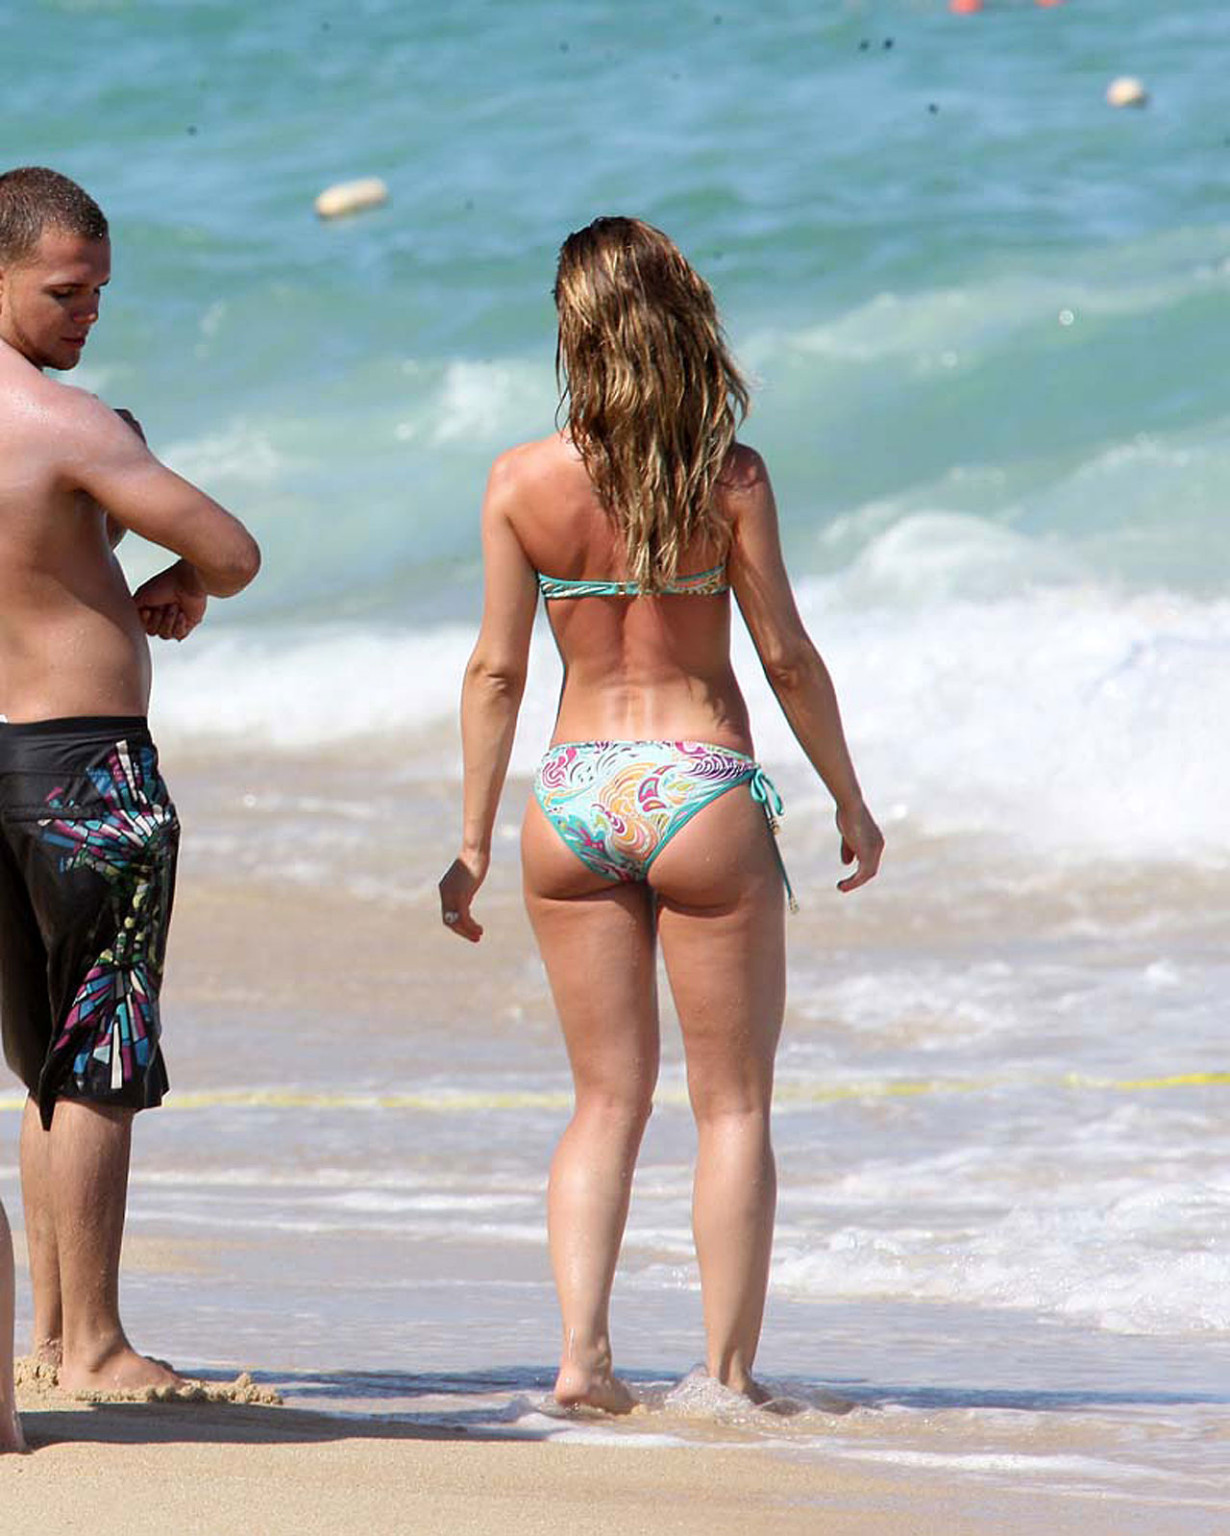 Mena suvari disfrutando en la playa en topless y mostrando su sexy culo en bikini
 #75361385